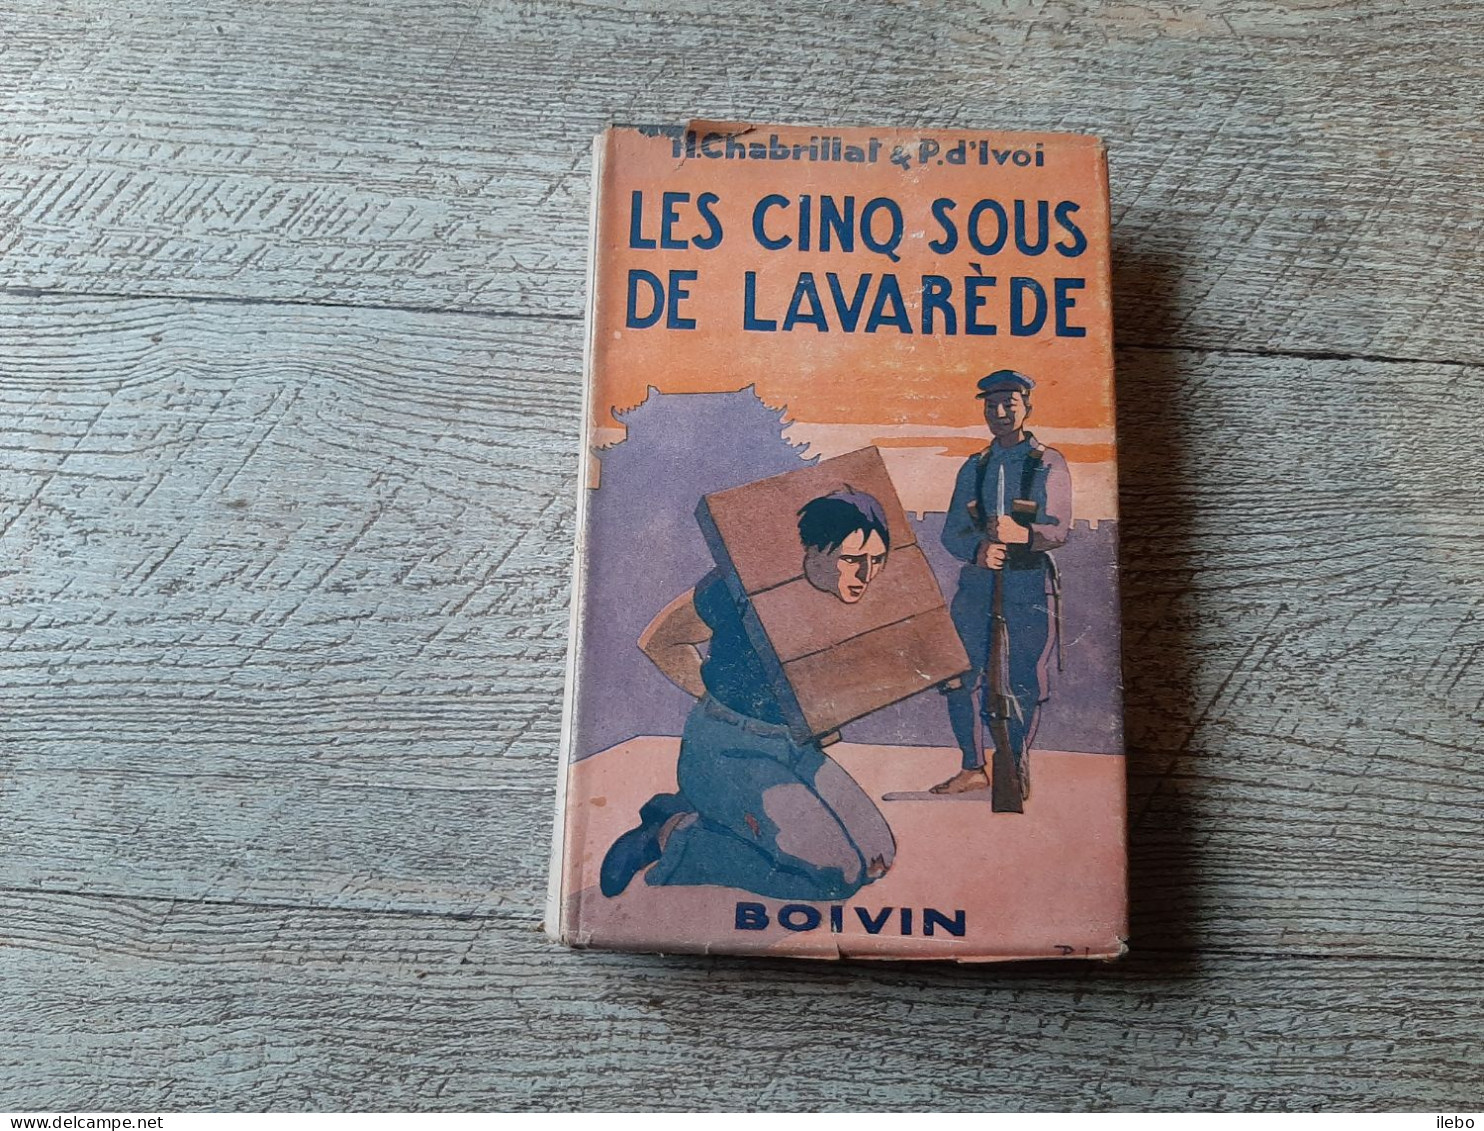 Les Cinq Sous De Lavarède Paul D'ivoi Et Chabrillat Boivin 1948 Dessins Dufour - Aventure